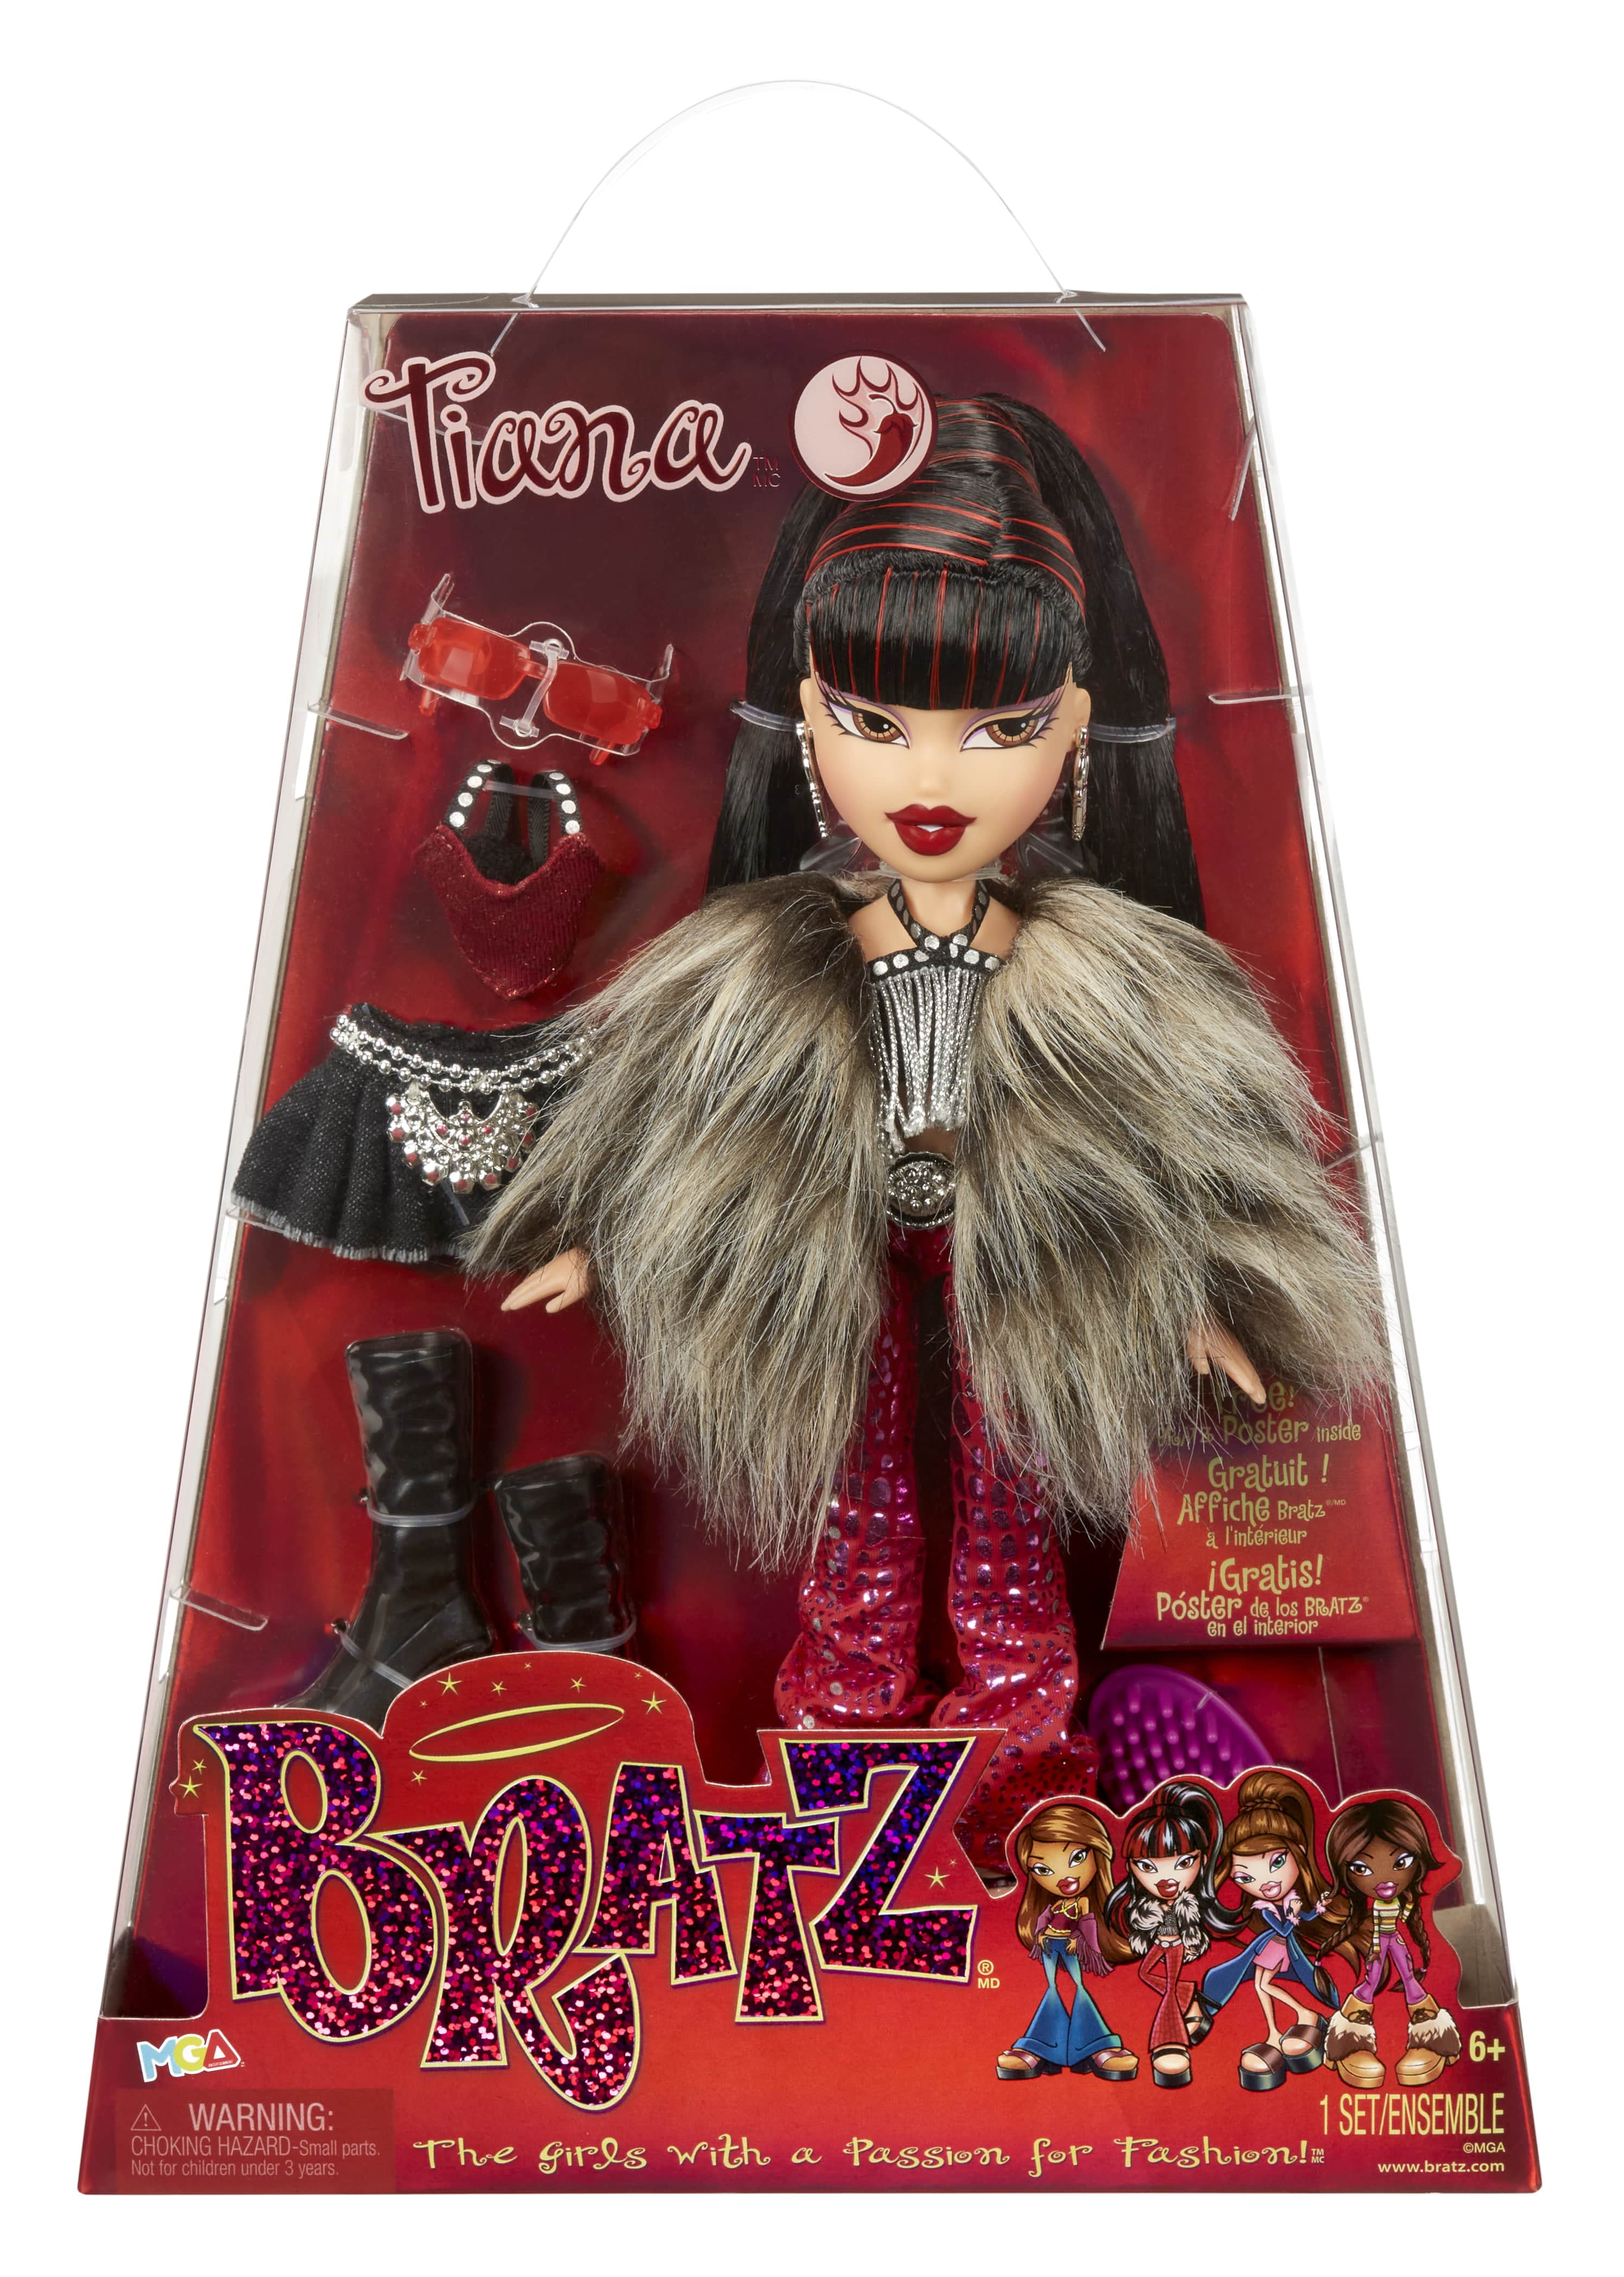 BRATZ Birthday Doll - Cloe (Second Edition) 